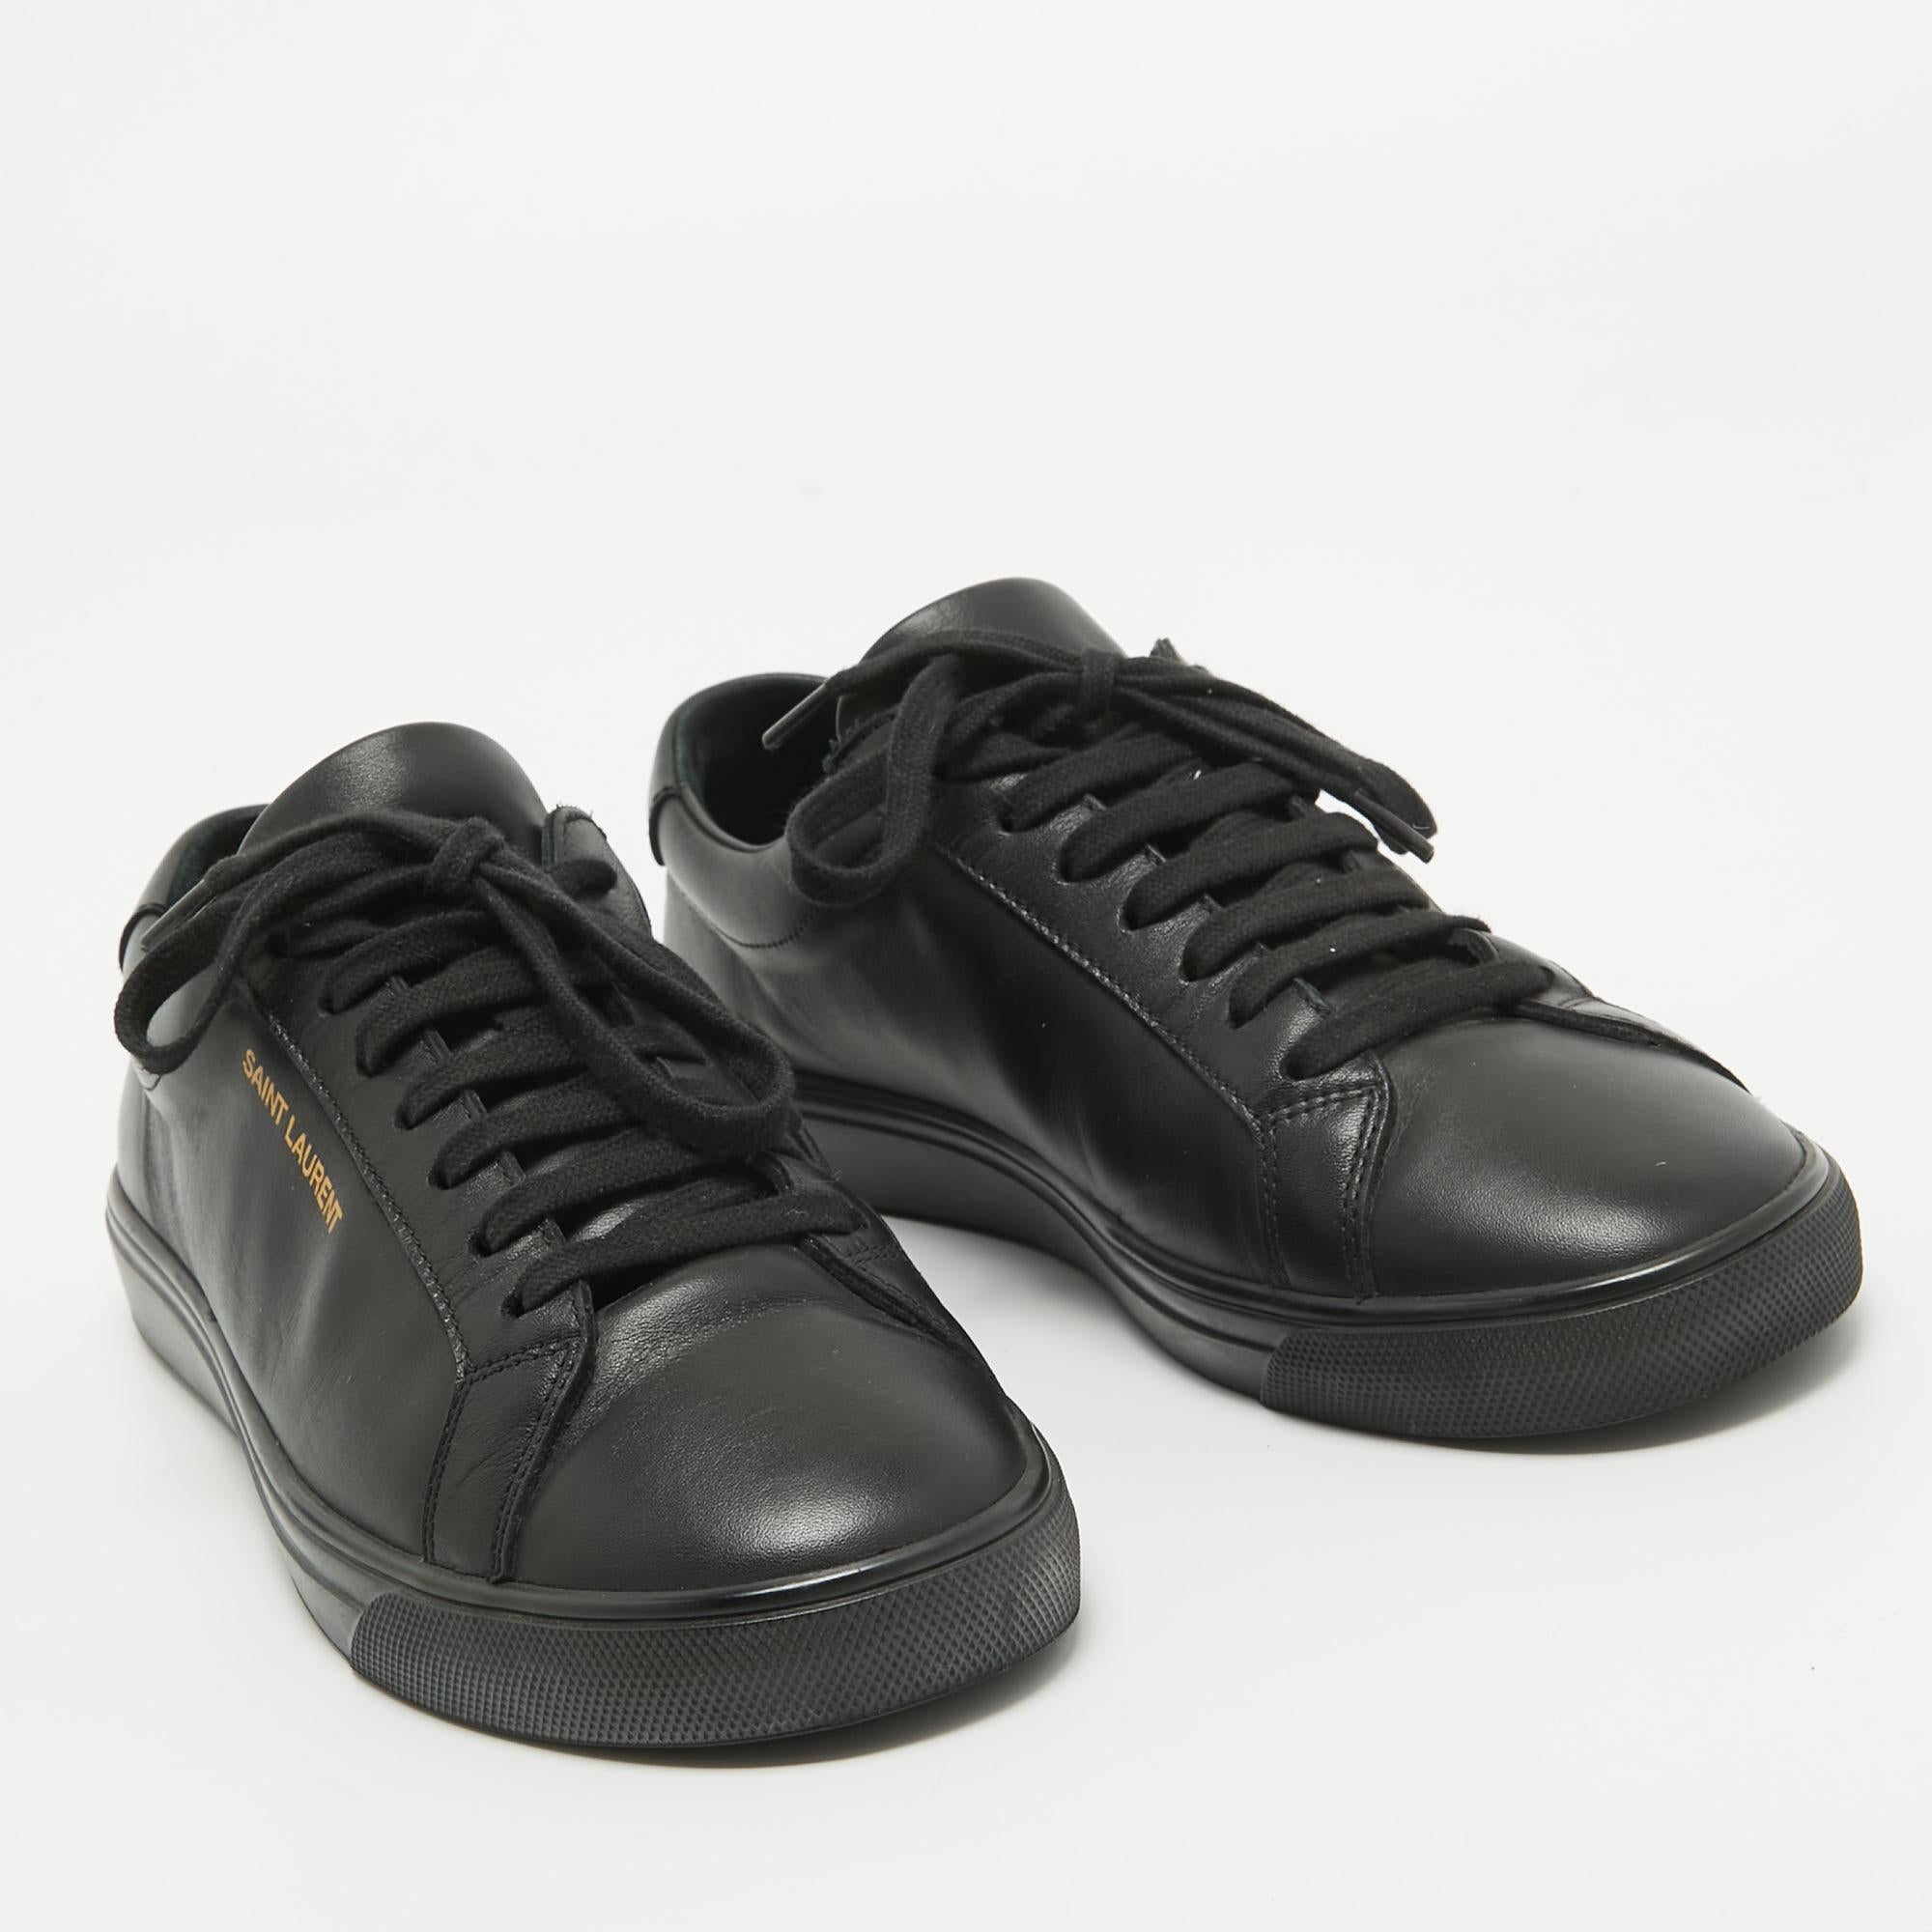 Saint Laurent Paris Black Leather Andy Low Top Sneakers Size 37 In Good Condition For Sale In Dubai, Al Qouz 2